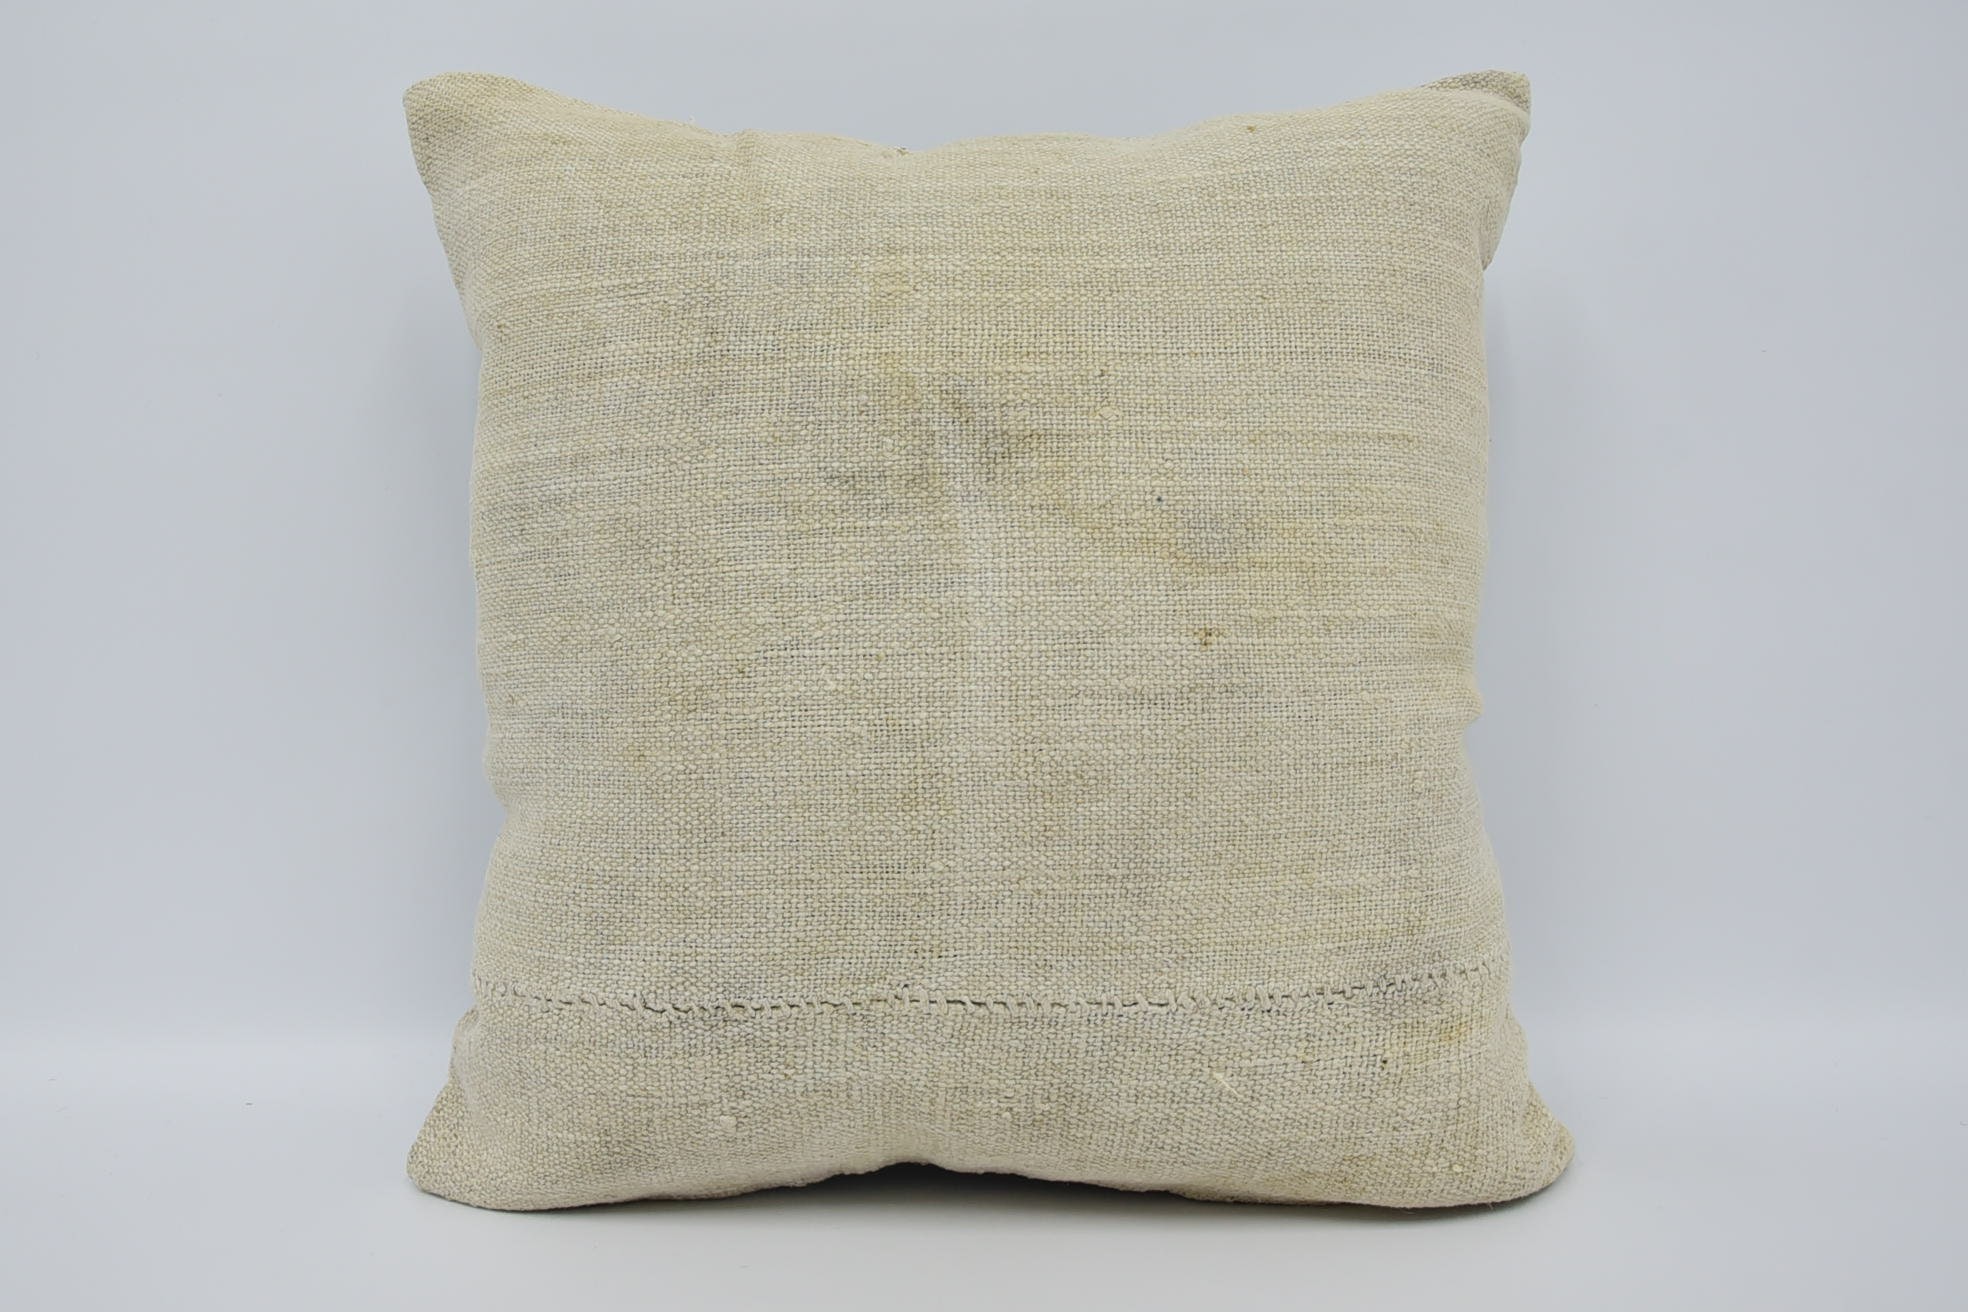 Cotton Pillow Sham, Throw Kilim Pillow, Turkish Kilim Pillow, 18"x18" Beige Cushion Case, Vintage Kilim Throw Pillow